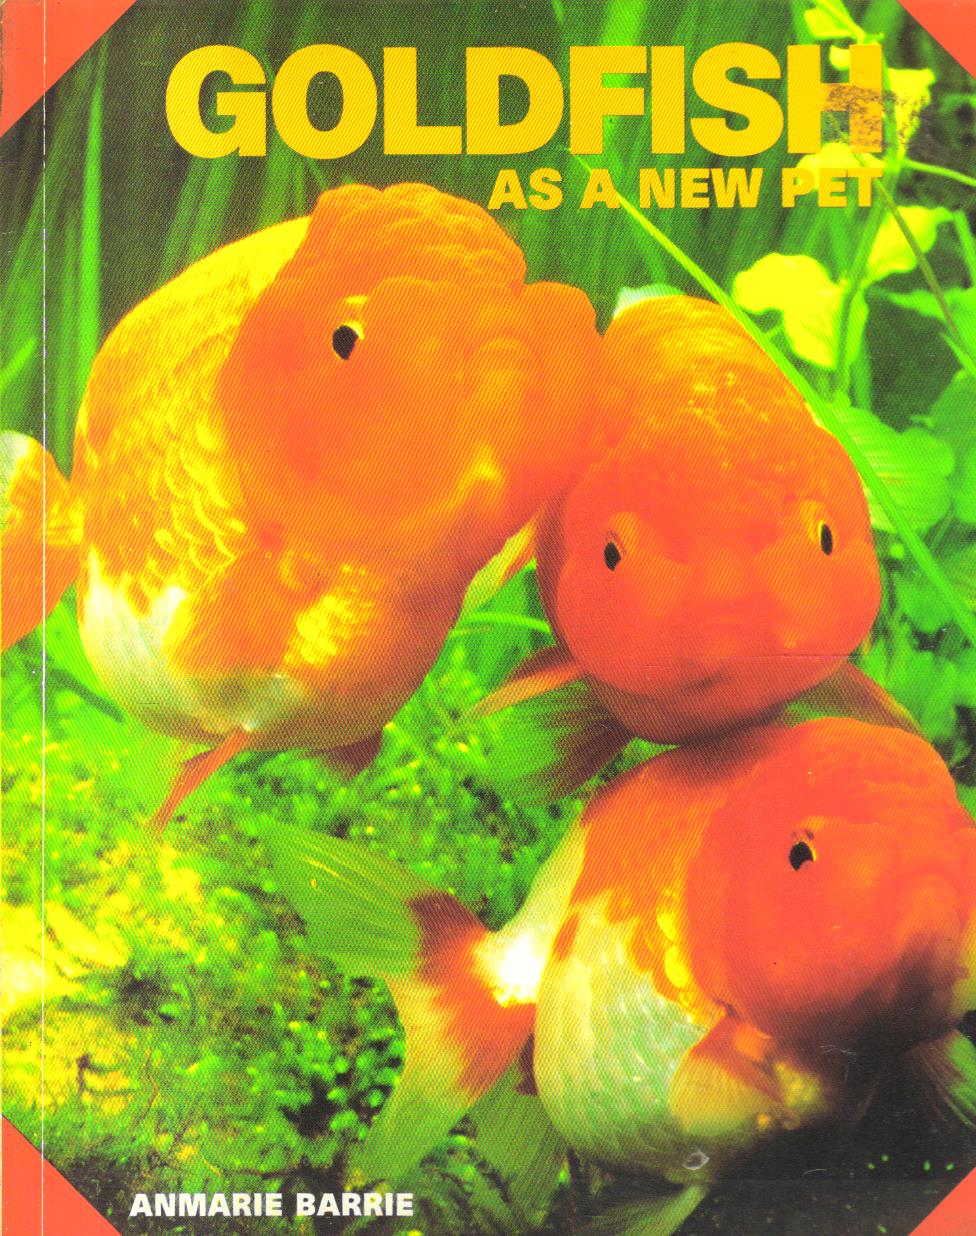 Goldfish as a new pet.